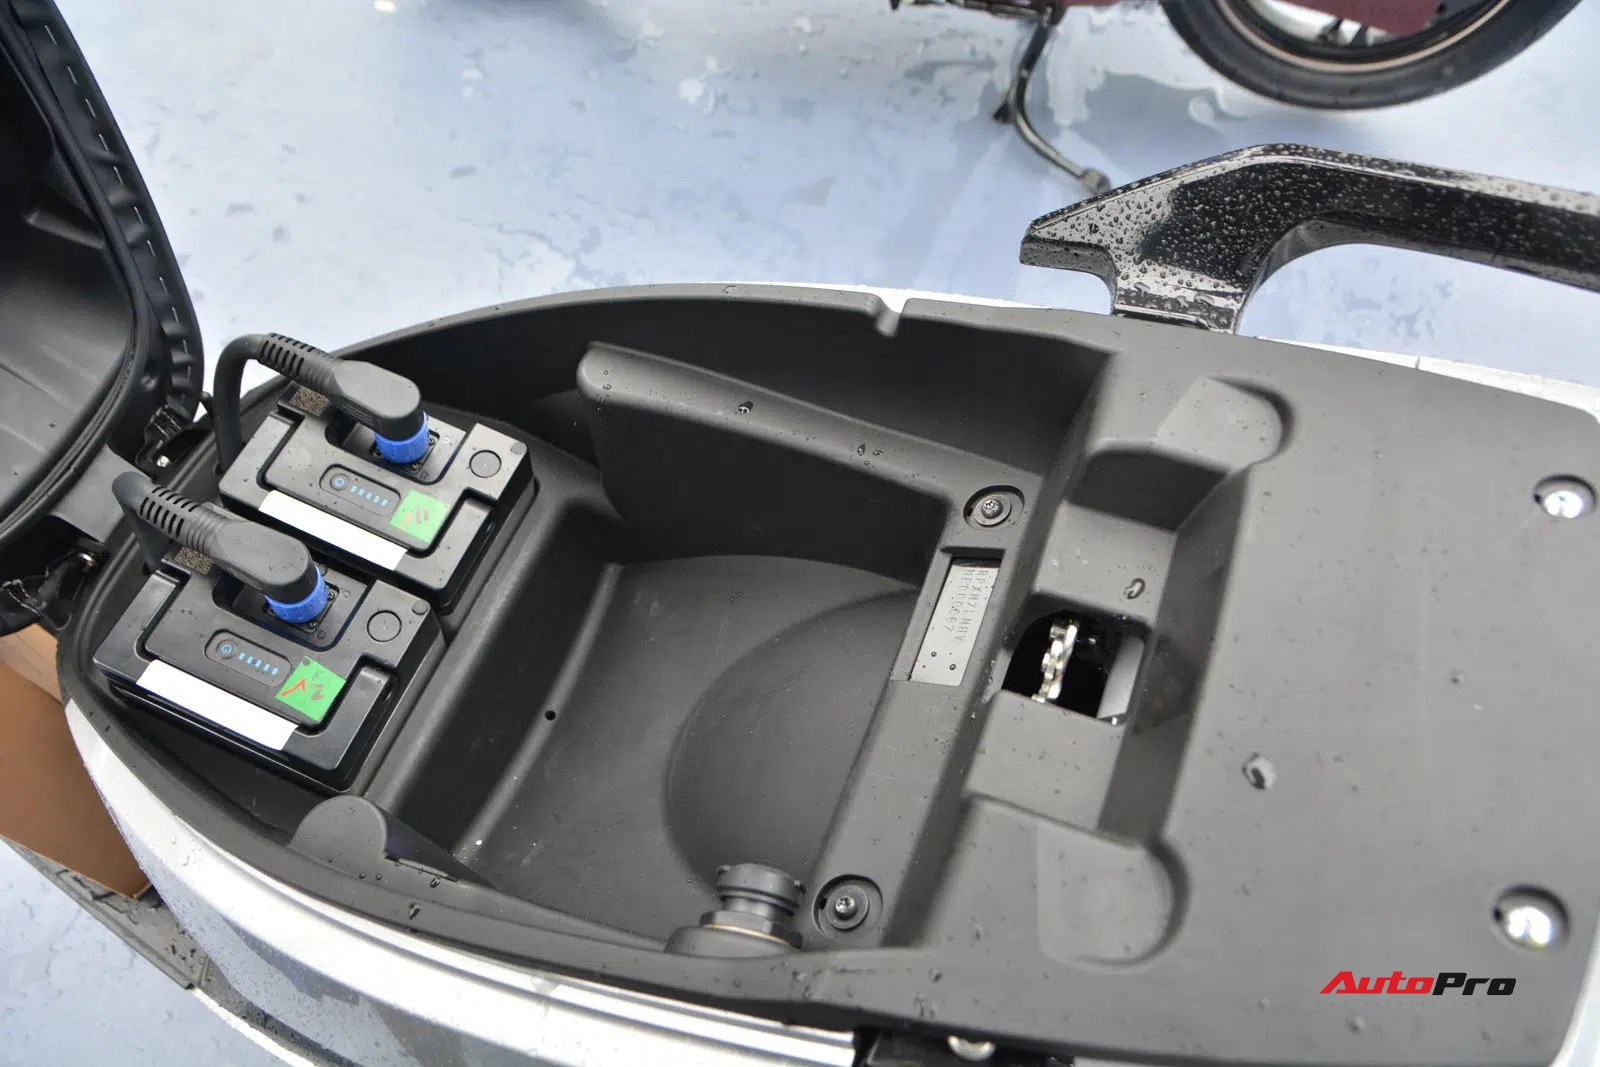 Ra mắt VinFast Theon: Xe máy điện to như Honda SH, có ABS 2 kênh và nhiều công nghệ ‘xịn xò’ khác - Ảnh 4.